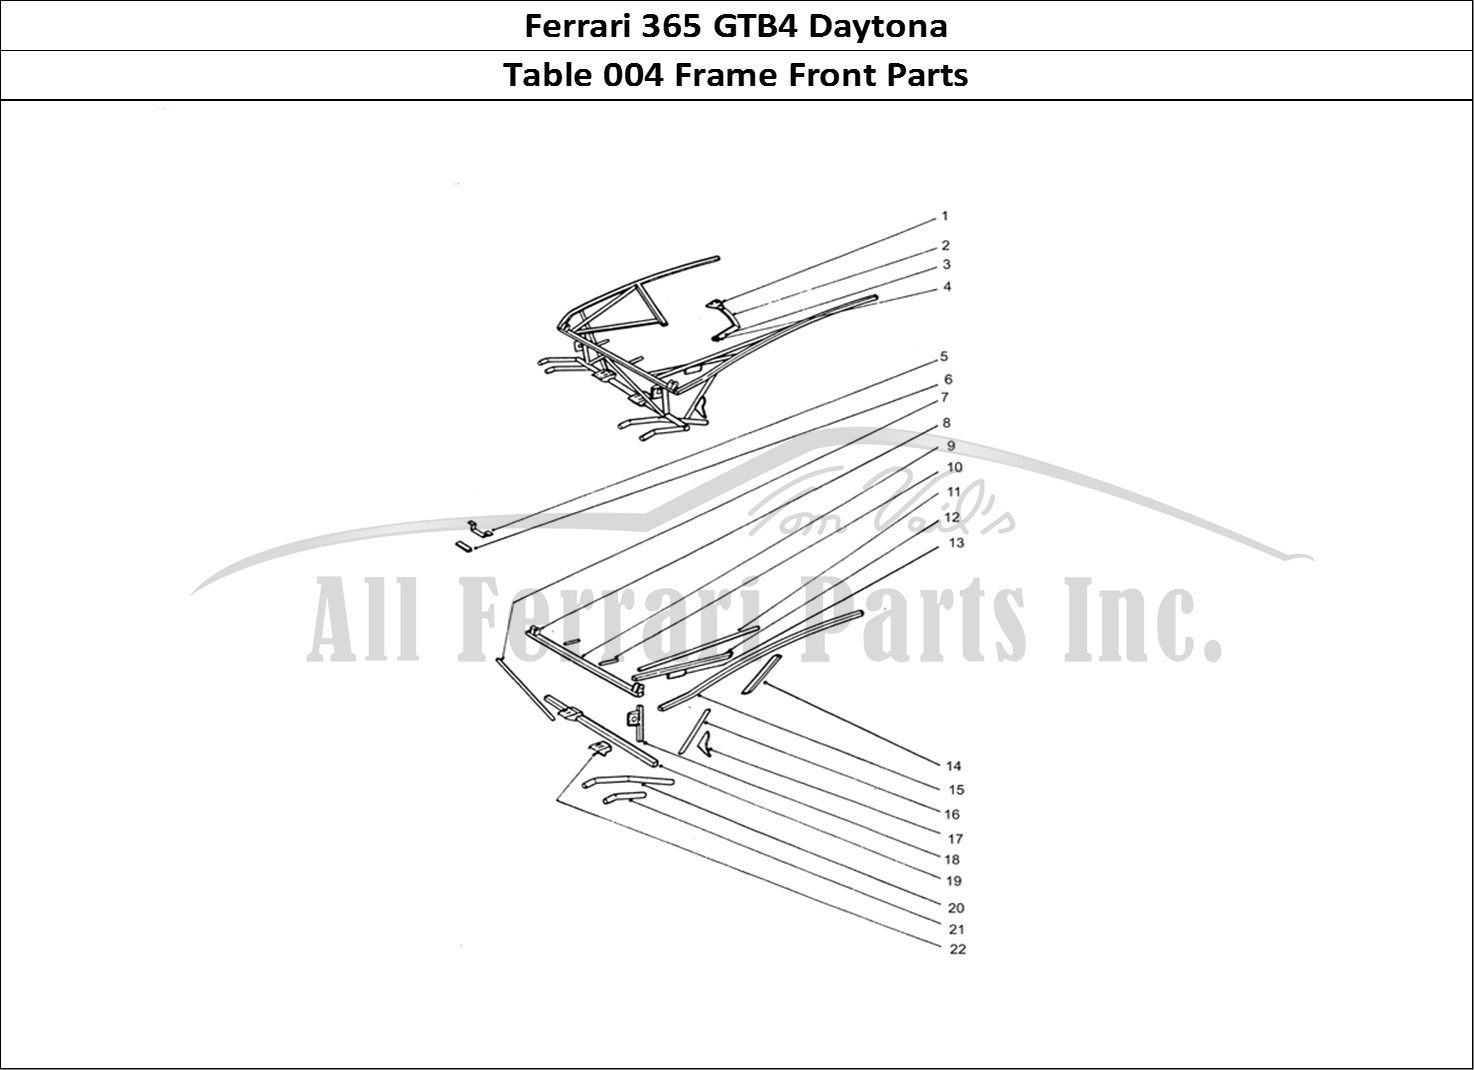 Ferrari Parts Ferrari 365 GTB4 Daytona (Coachwork) Page 004 Front Frame Work